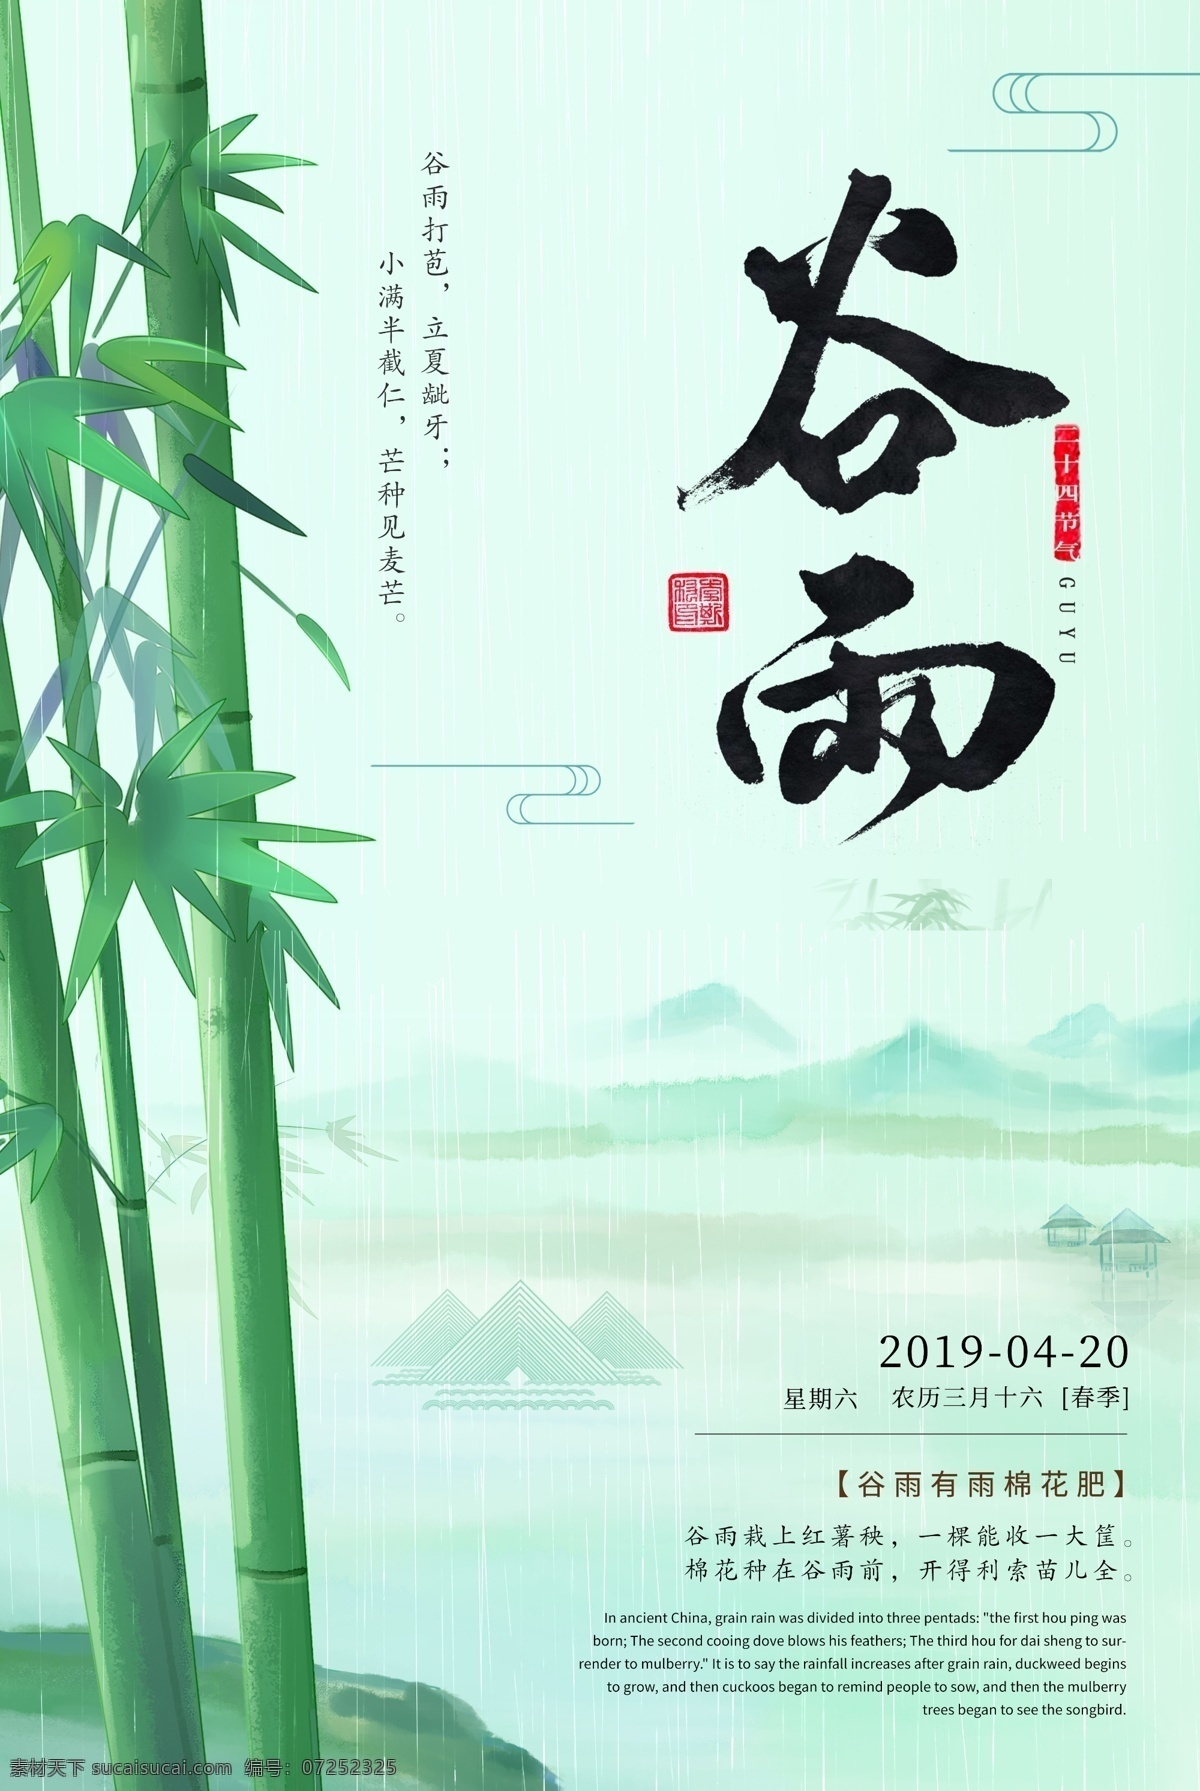 二十四节气 谷雨 海报 24节气 清新 中国风 竹子 下雨 雨季 雨水 山水 竹叶 远山 传统节气 节气文化